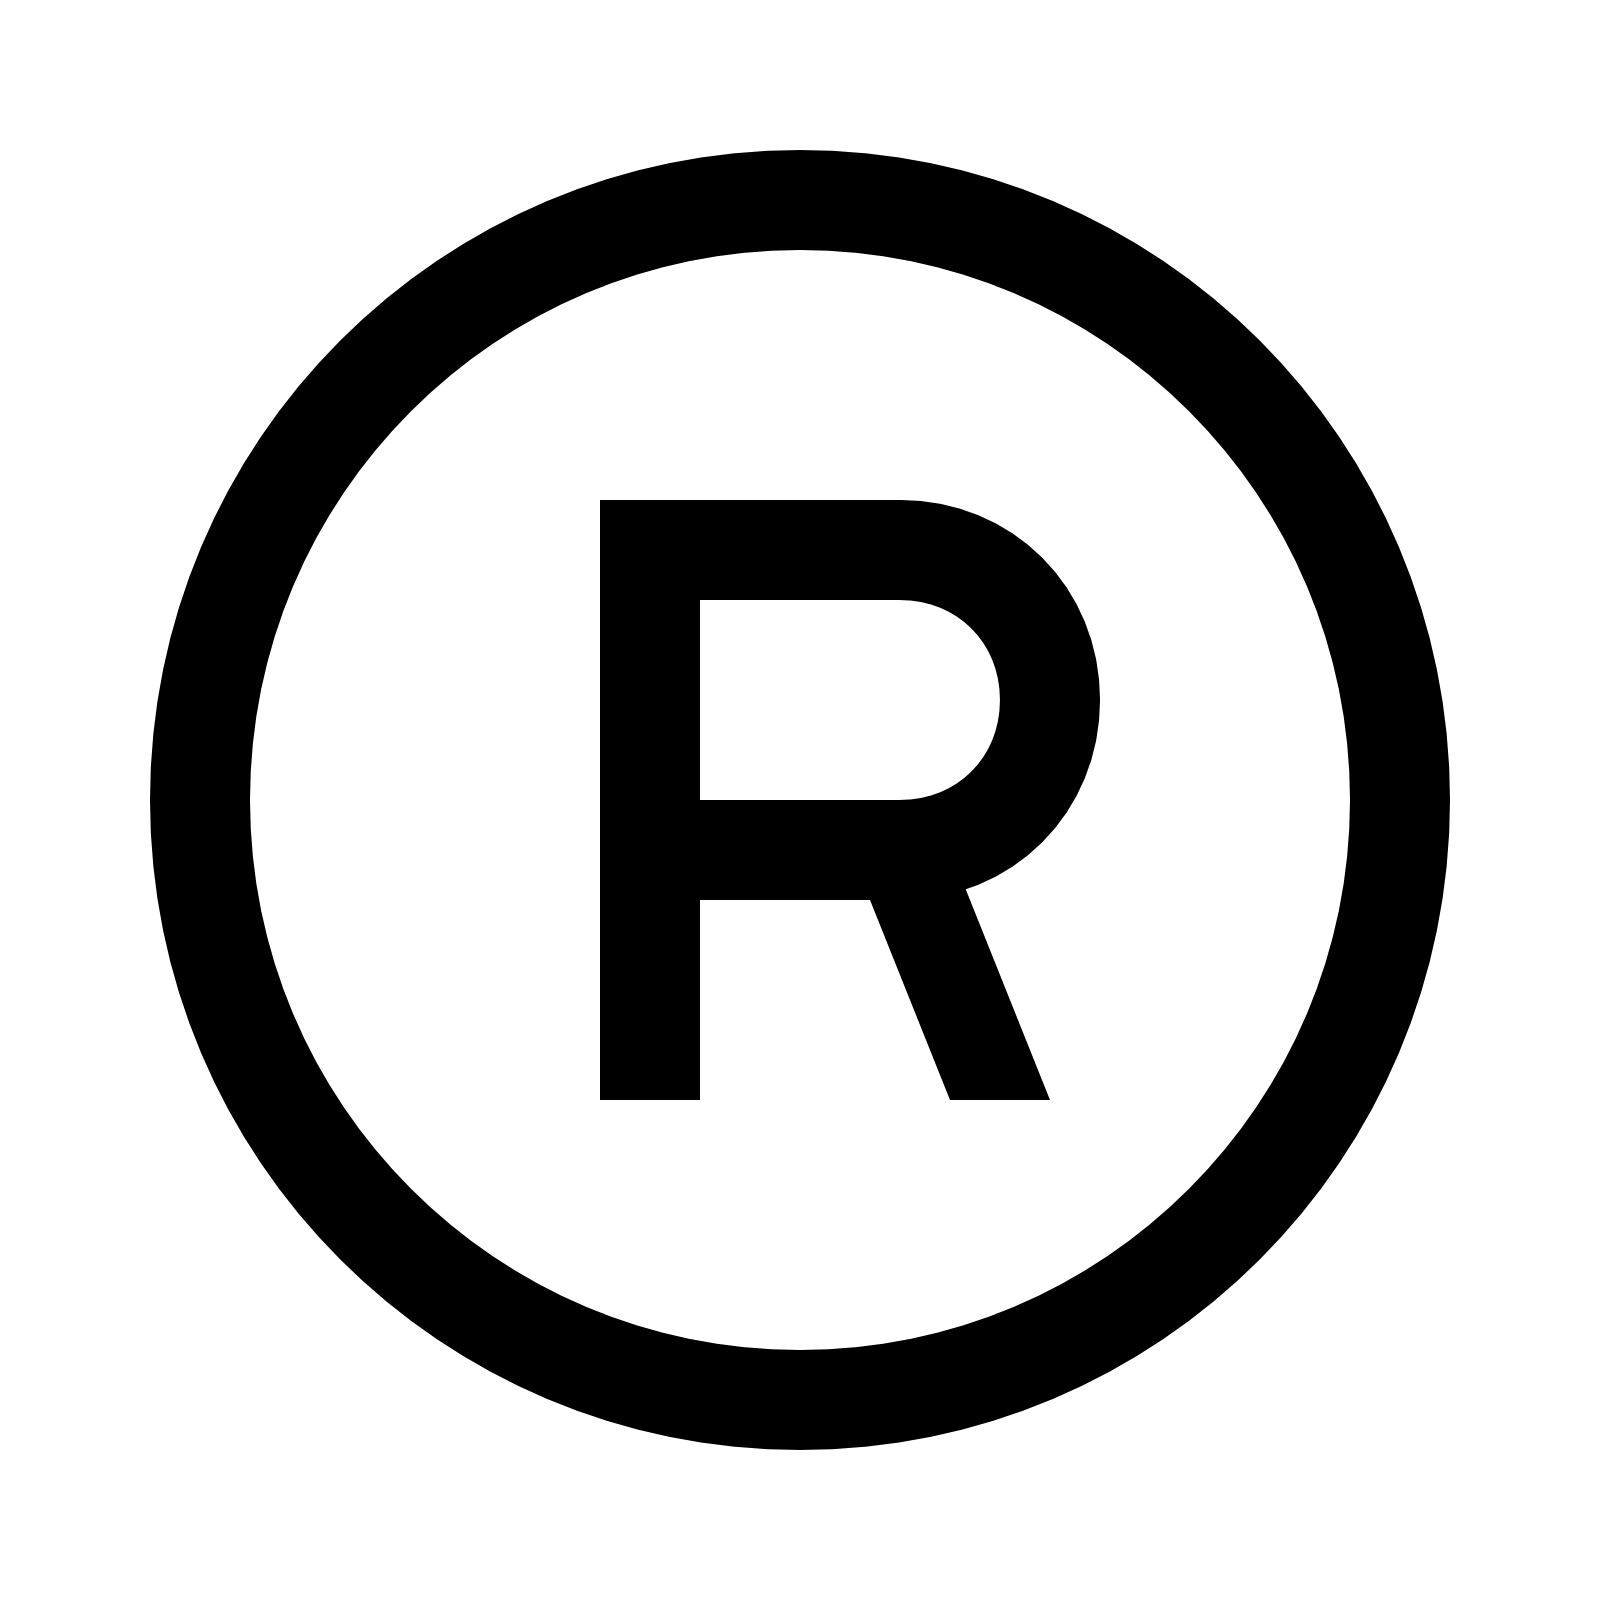 Registered Logo - Copyright R Symbol (Registered Trademark) PNG Transparent Image